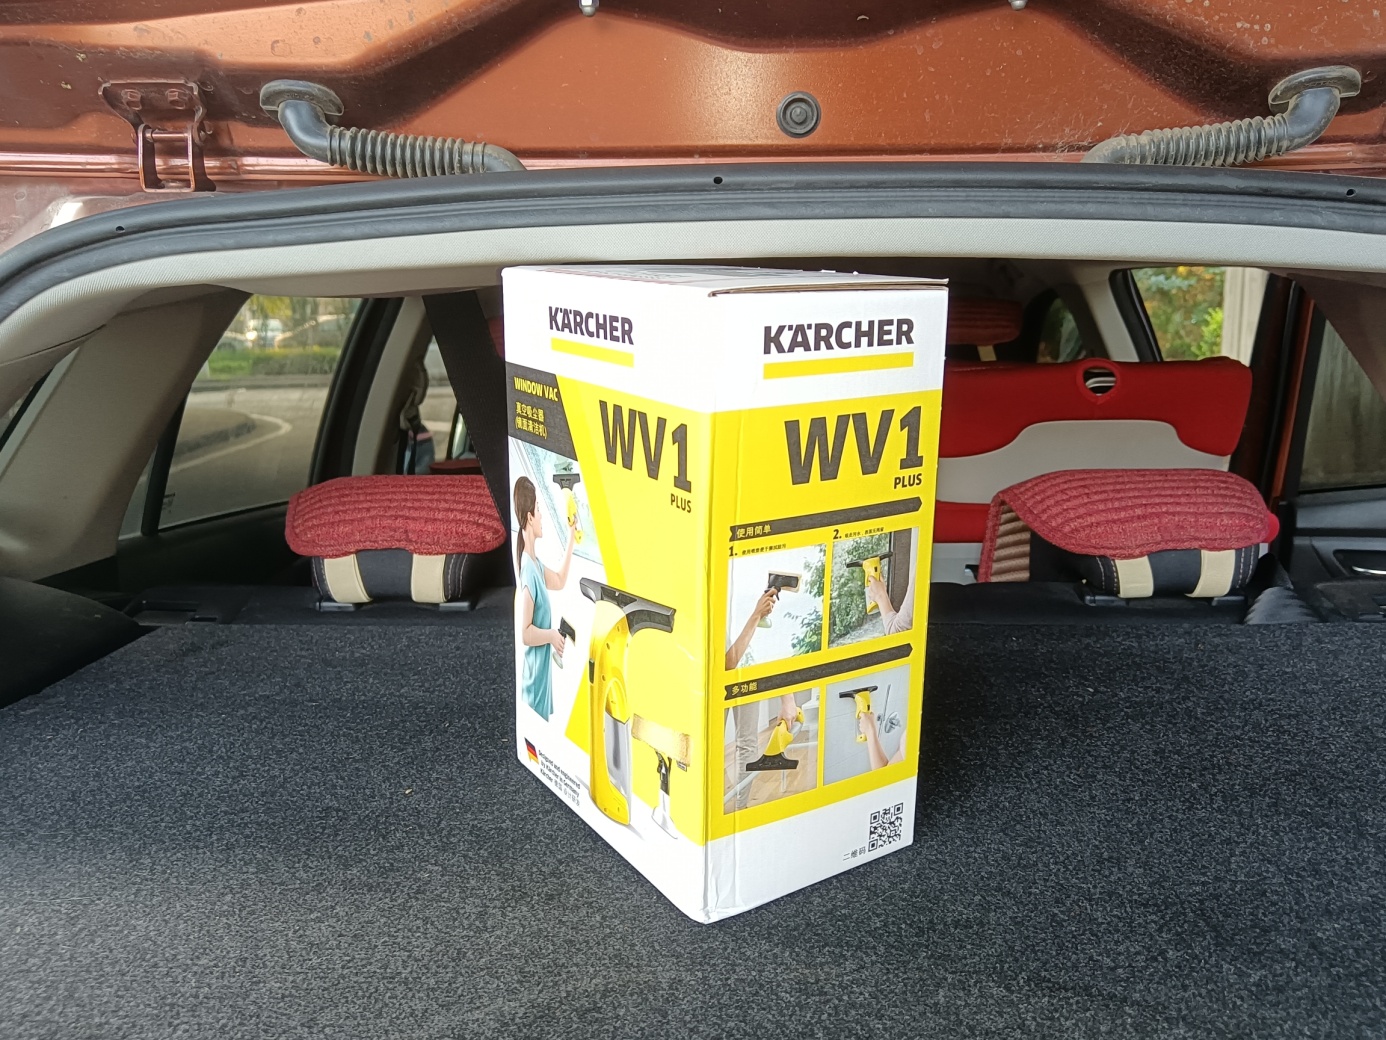 镜面清洁不留痕- 德国卡赫WV1 Plus镜面清洁机评测